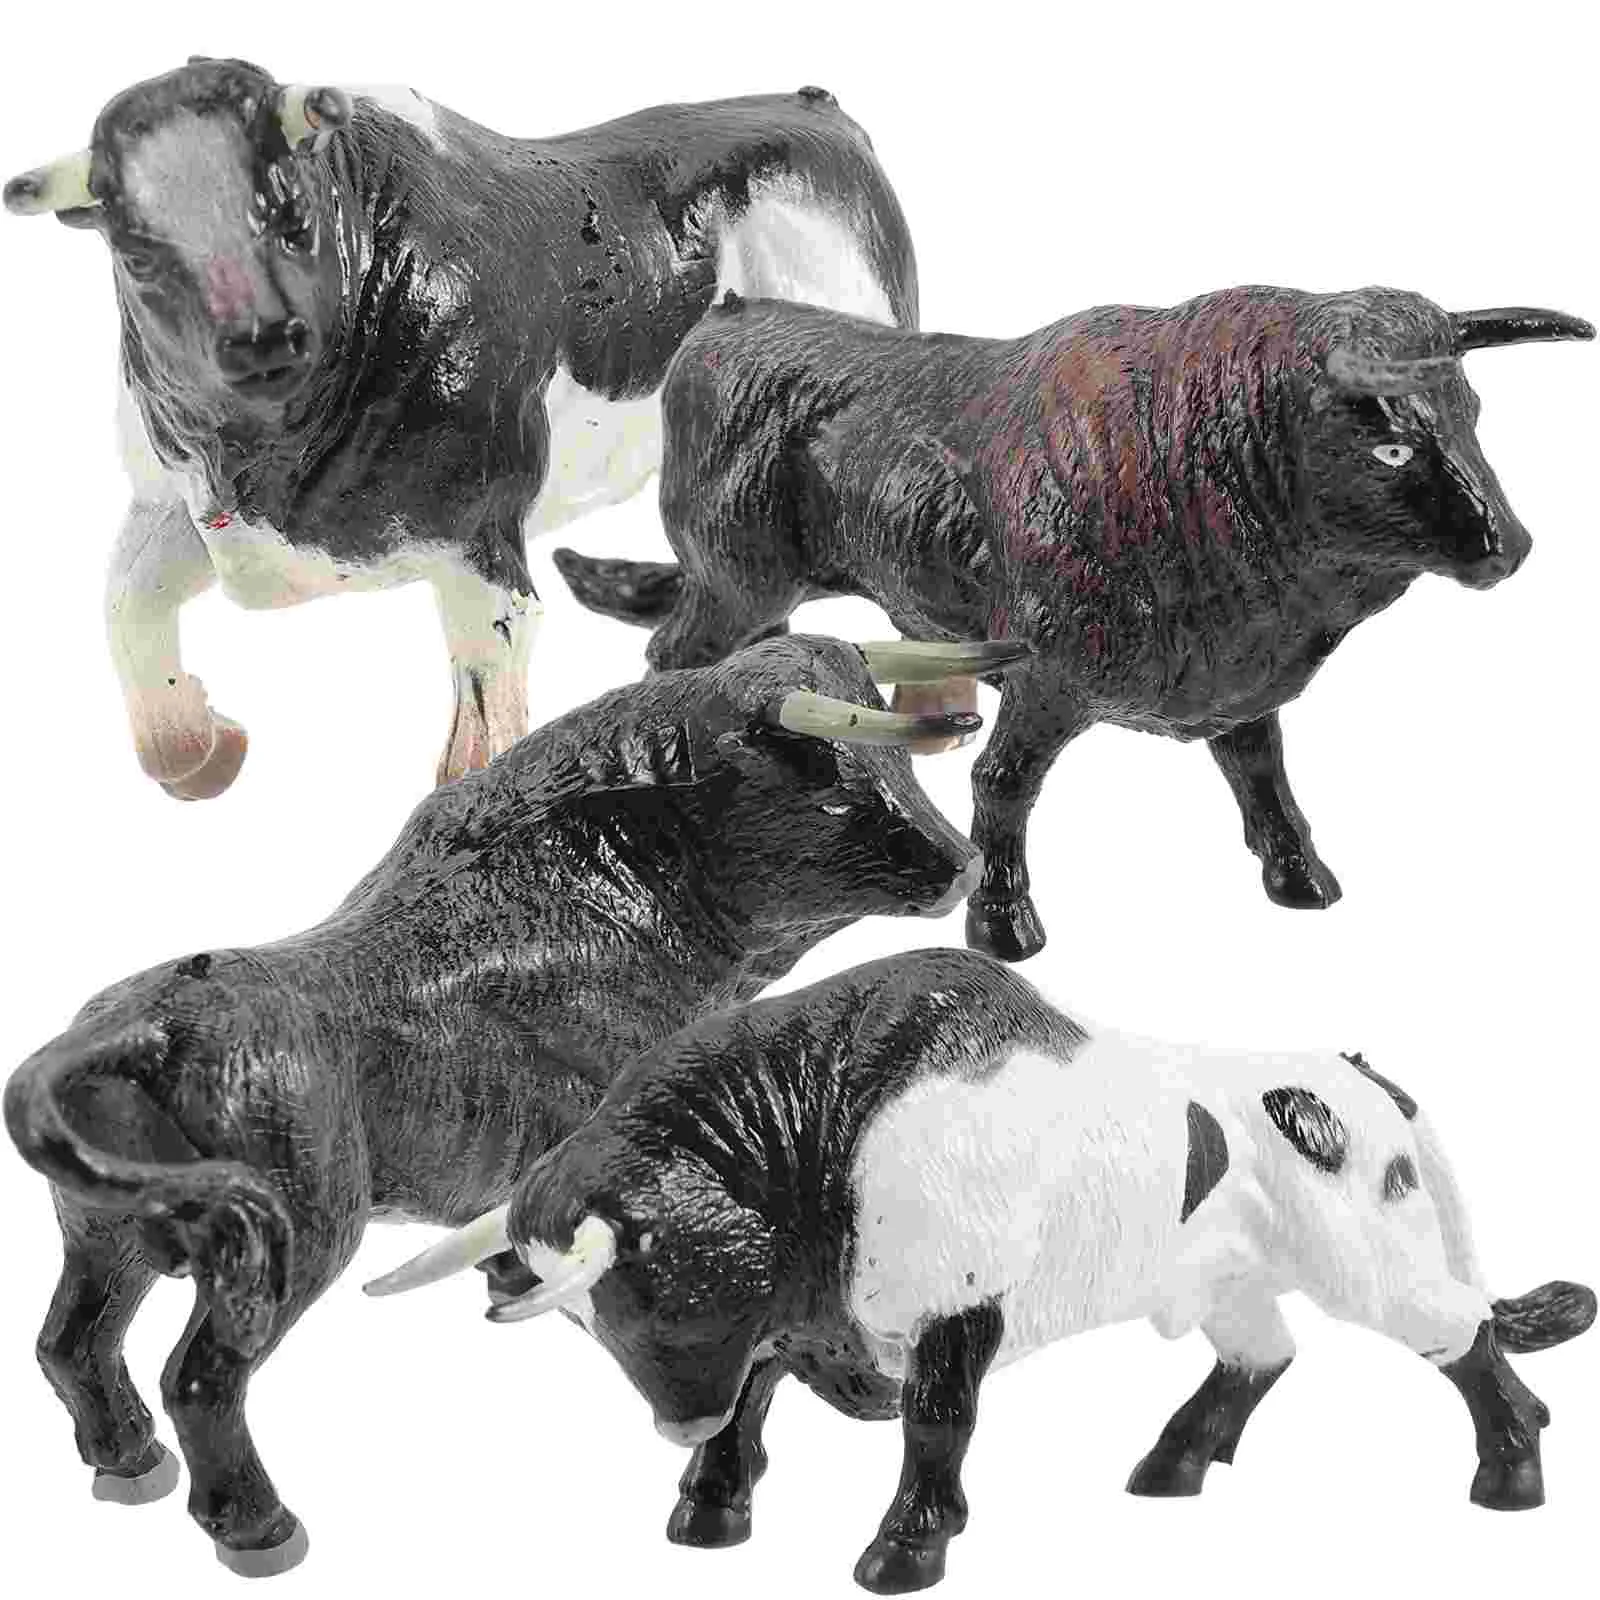 

Миниатюрные модели коров бонсай, настольные мини-фигурки коров, статуэтка, мини модель коровы, пластиковая модель коровы, игрушечные украшения